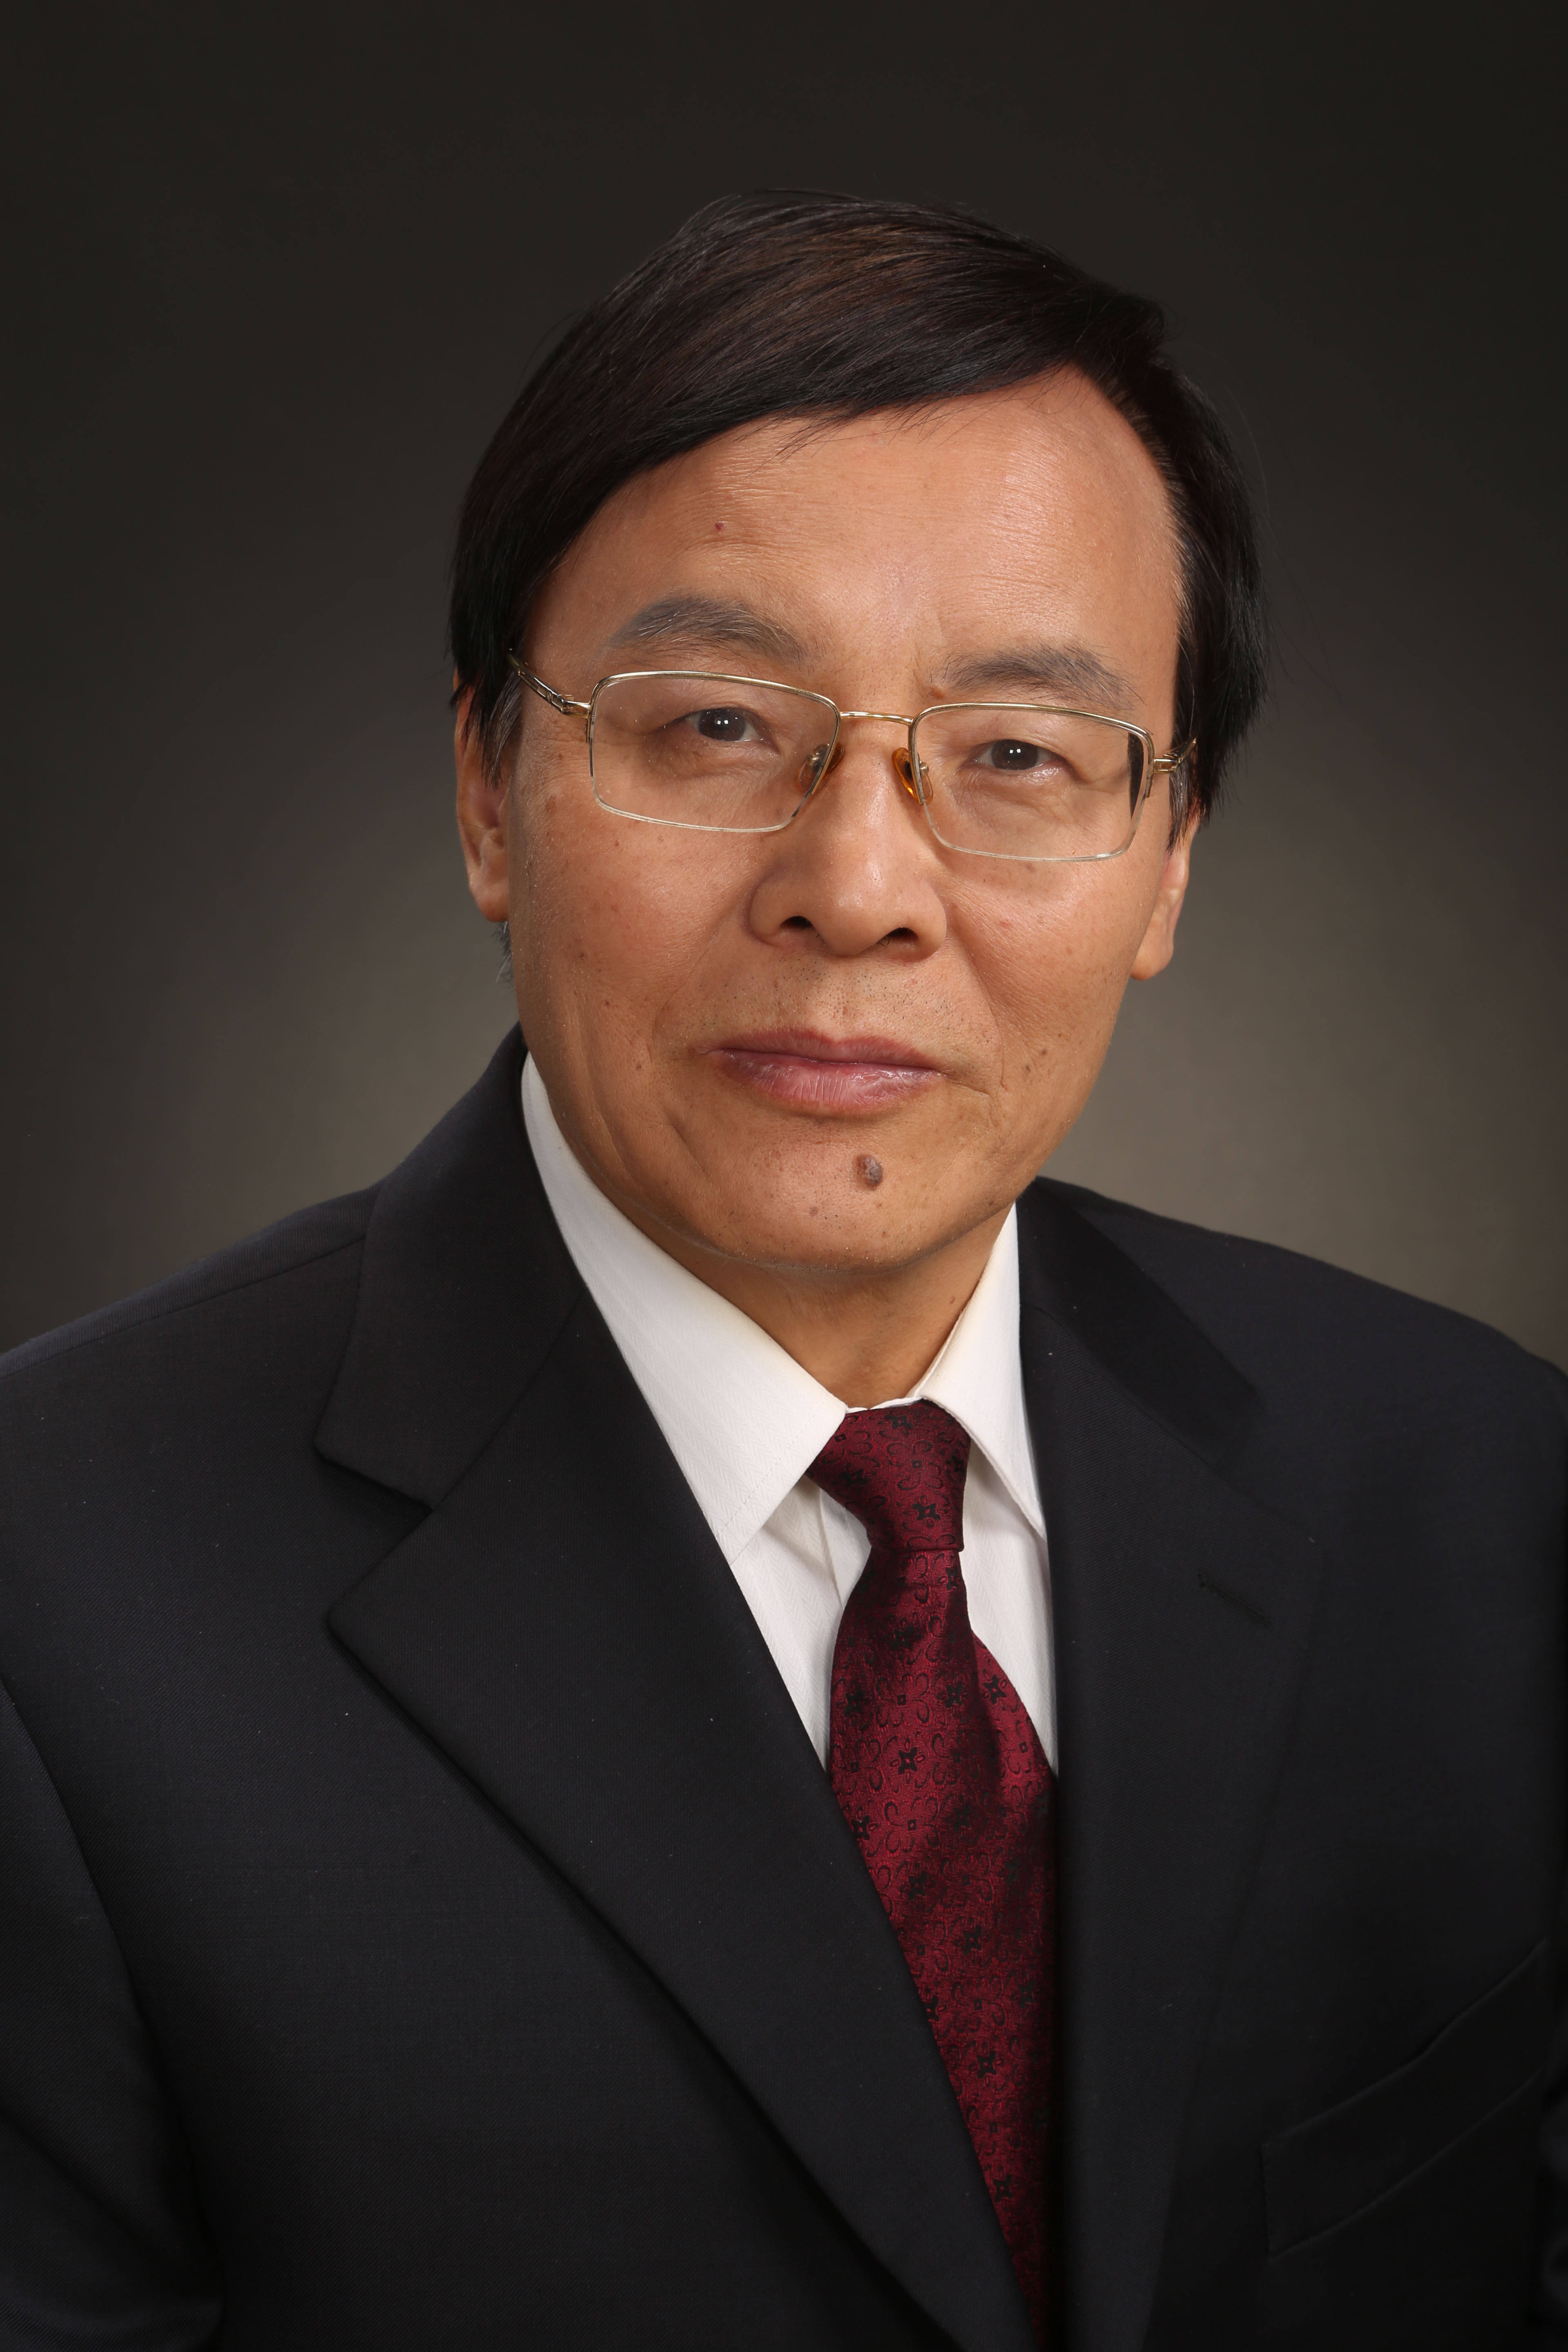 魏悦广(科学家)魏悦广,中国科学院院士,北京大学教授